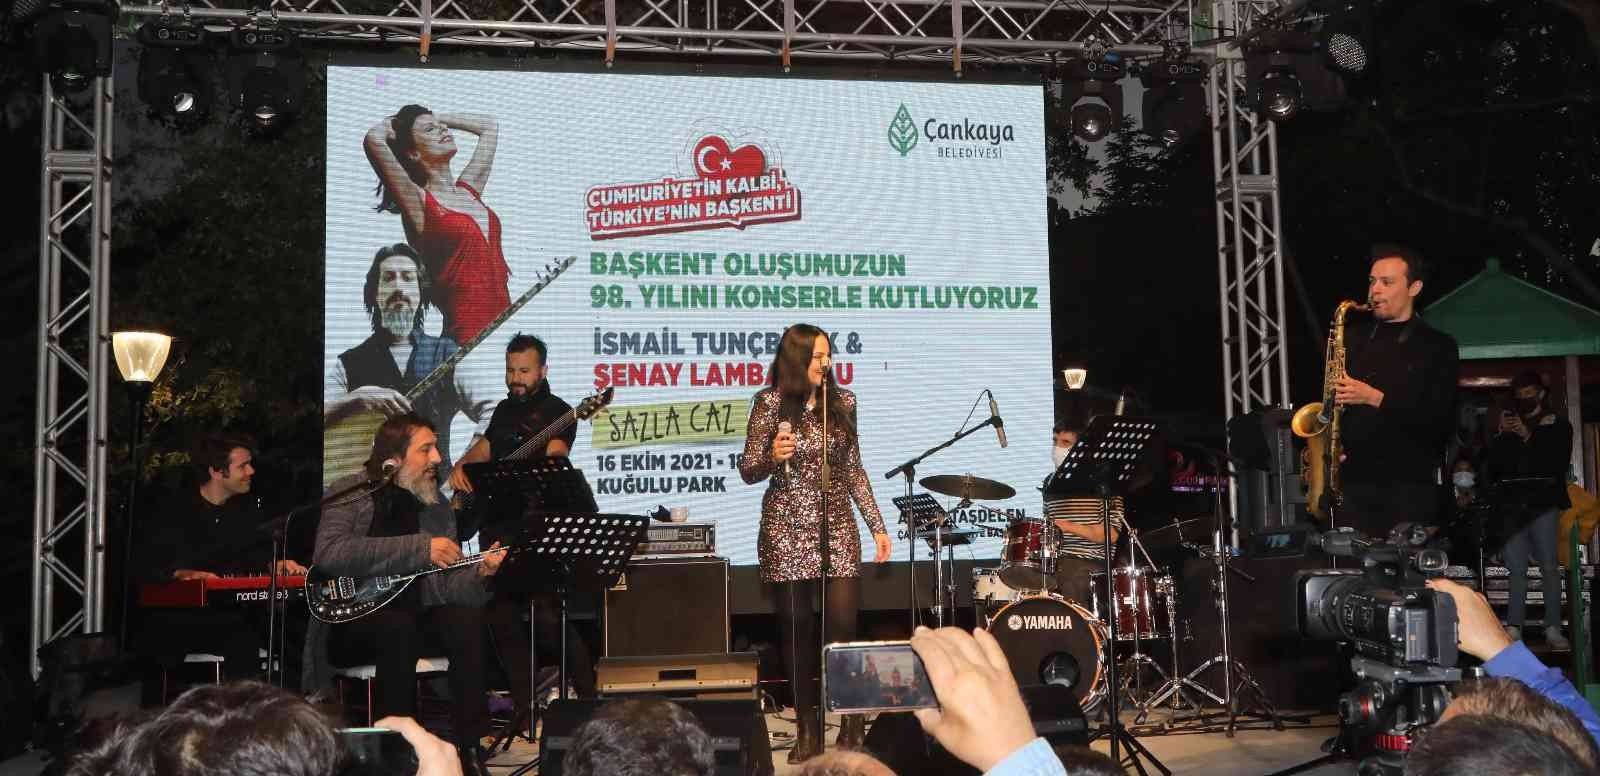 Ankara’nın başkent oluşunun 98’inci yılı kutlamalarında saz ile caz buluştu #ankara